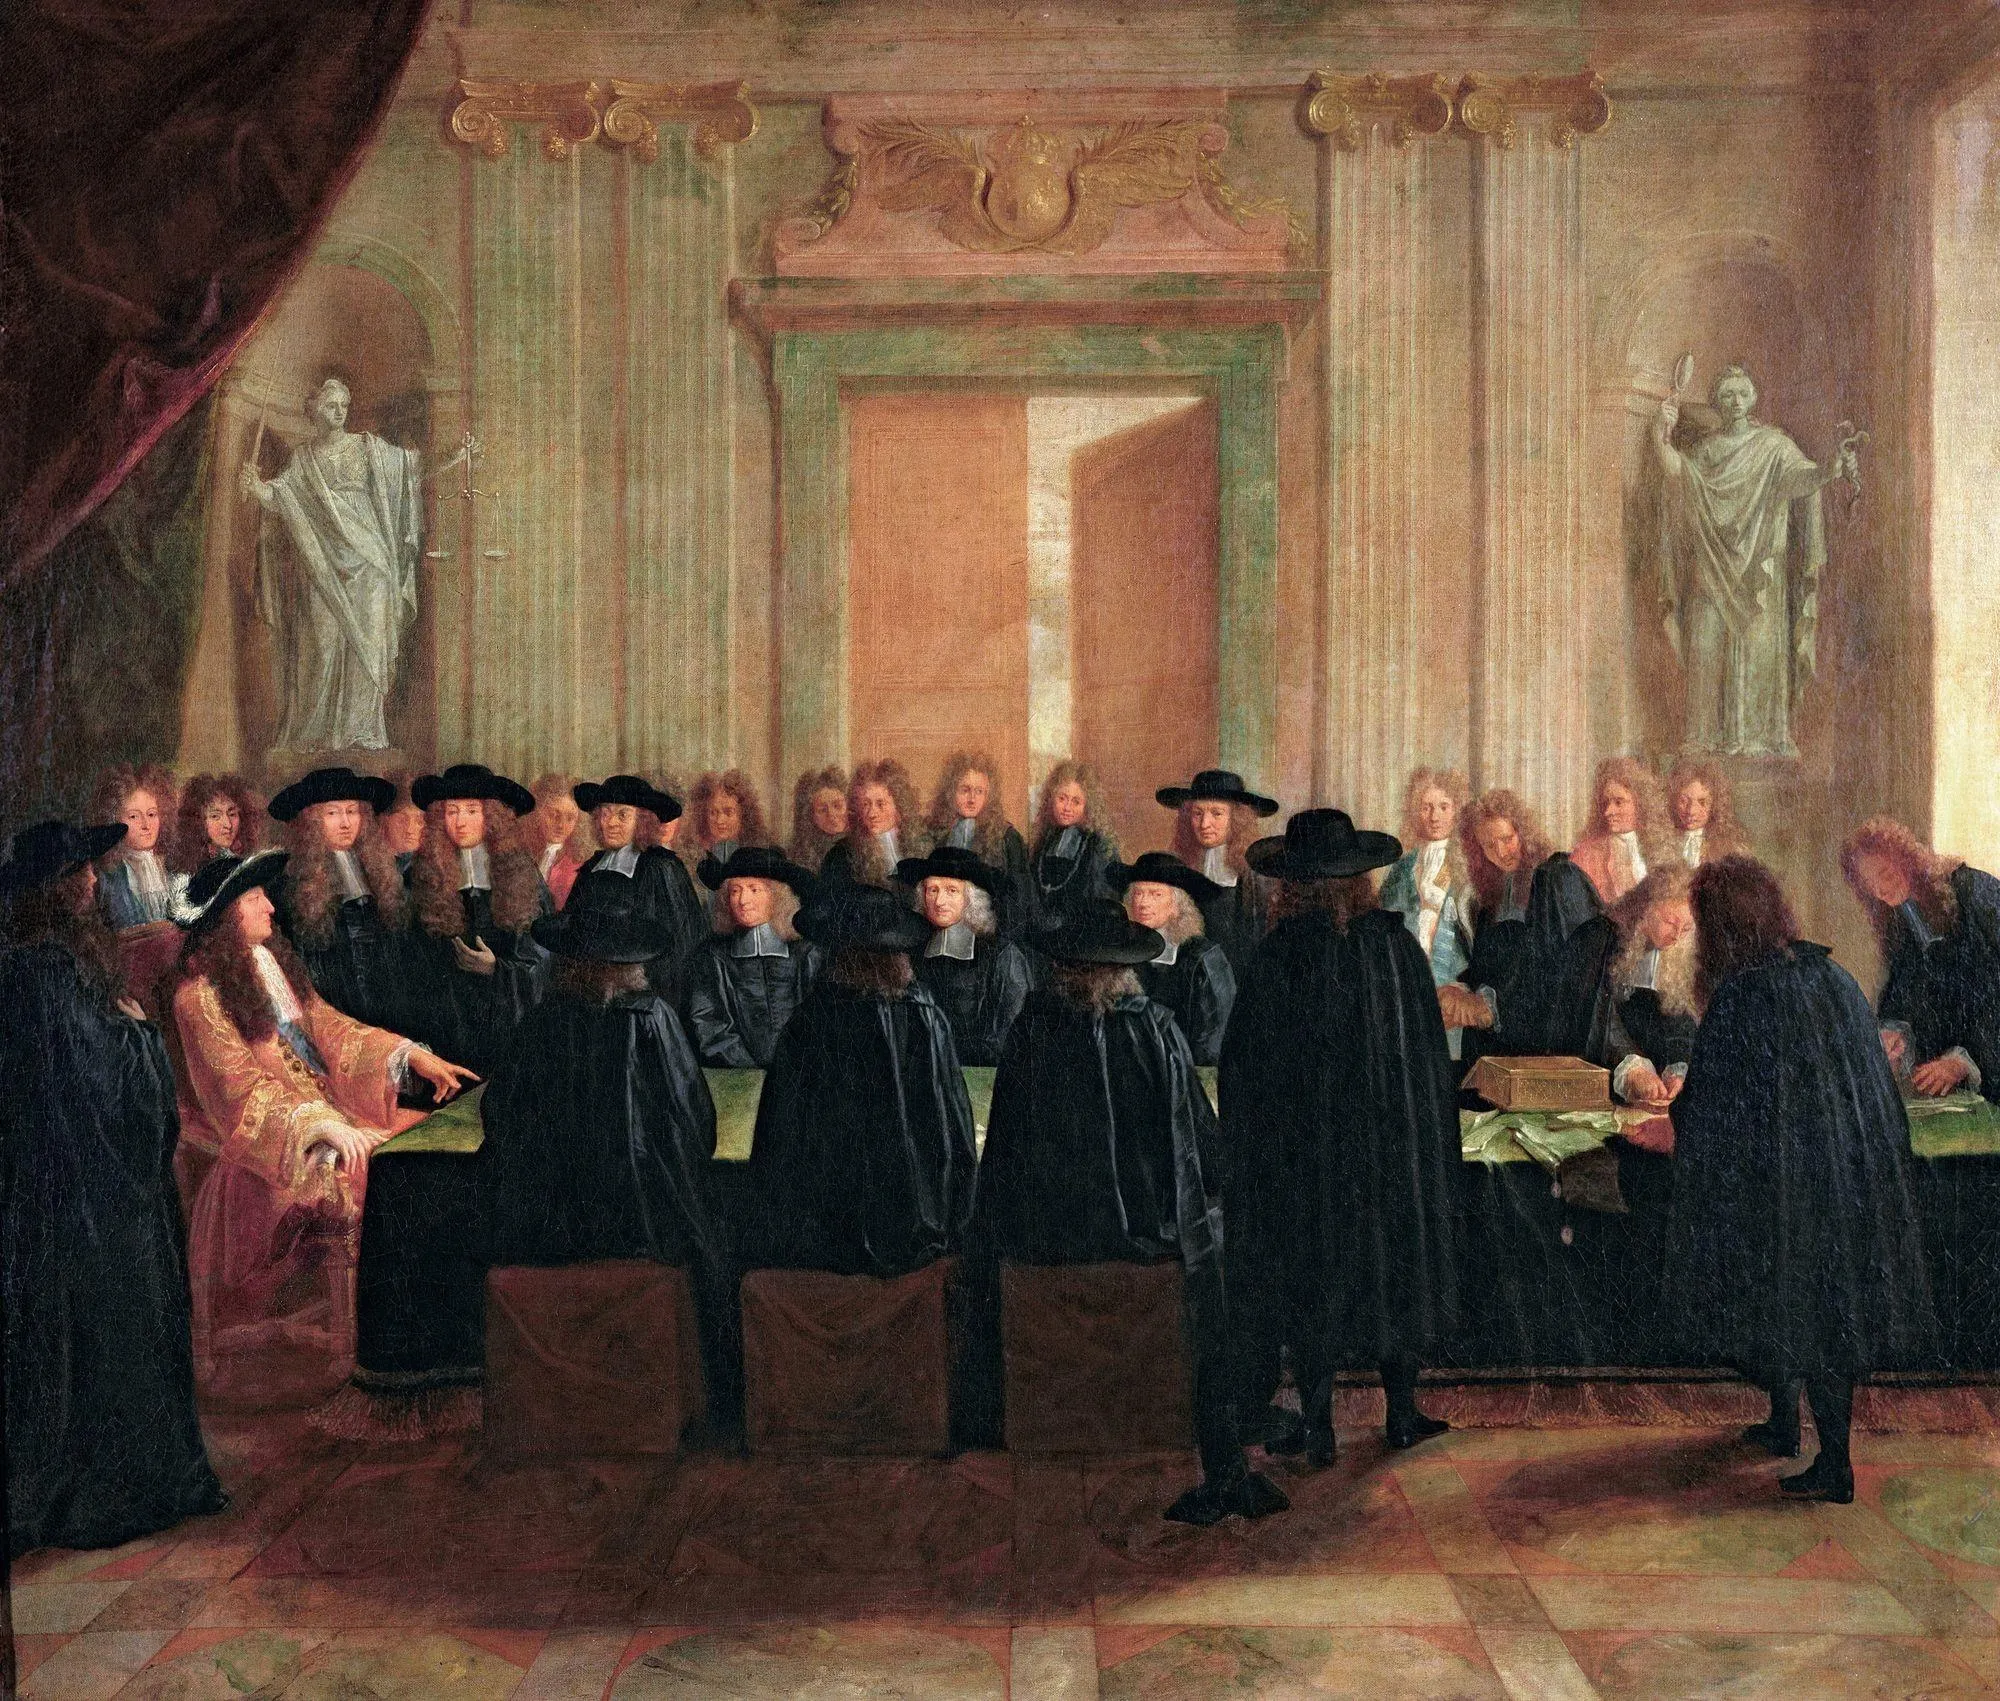 Anonyme, Louis XIV tenant les sceaux en présence des conseillers d'État et des maîtres des requêtes, XVIIe siècle, huile sur toile, 110 x 128 cm, château de Versailles